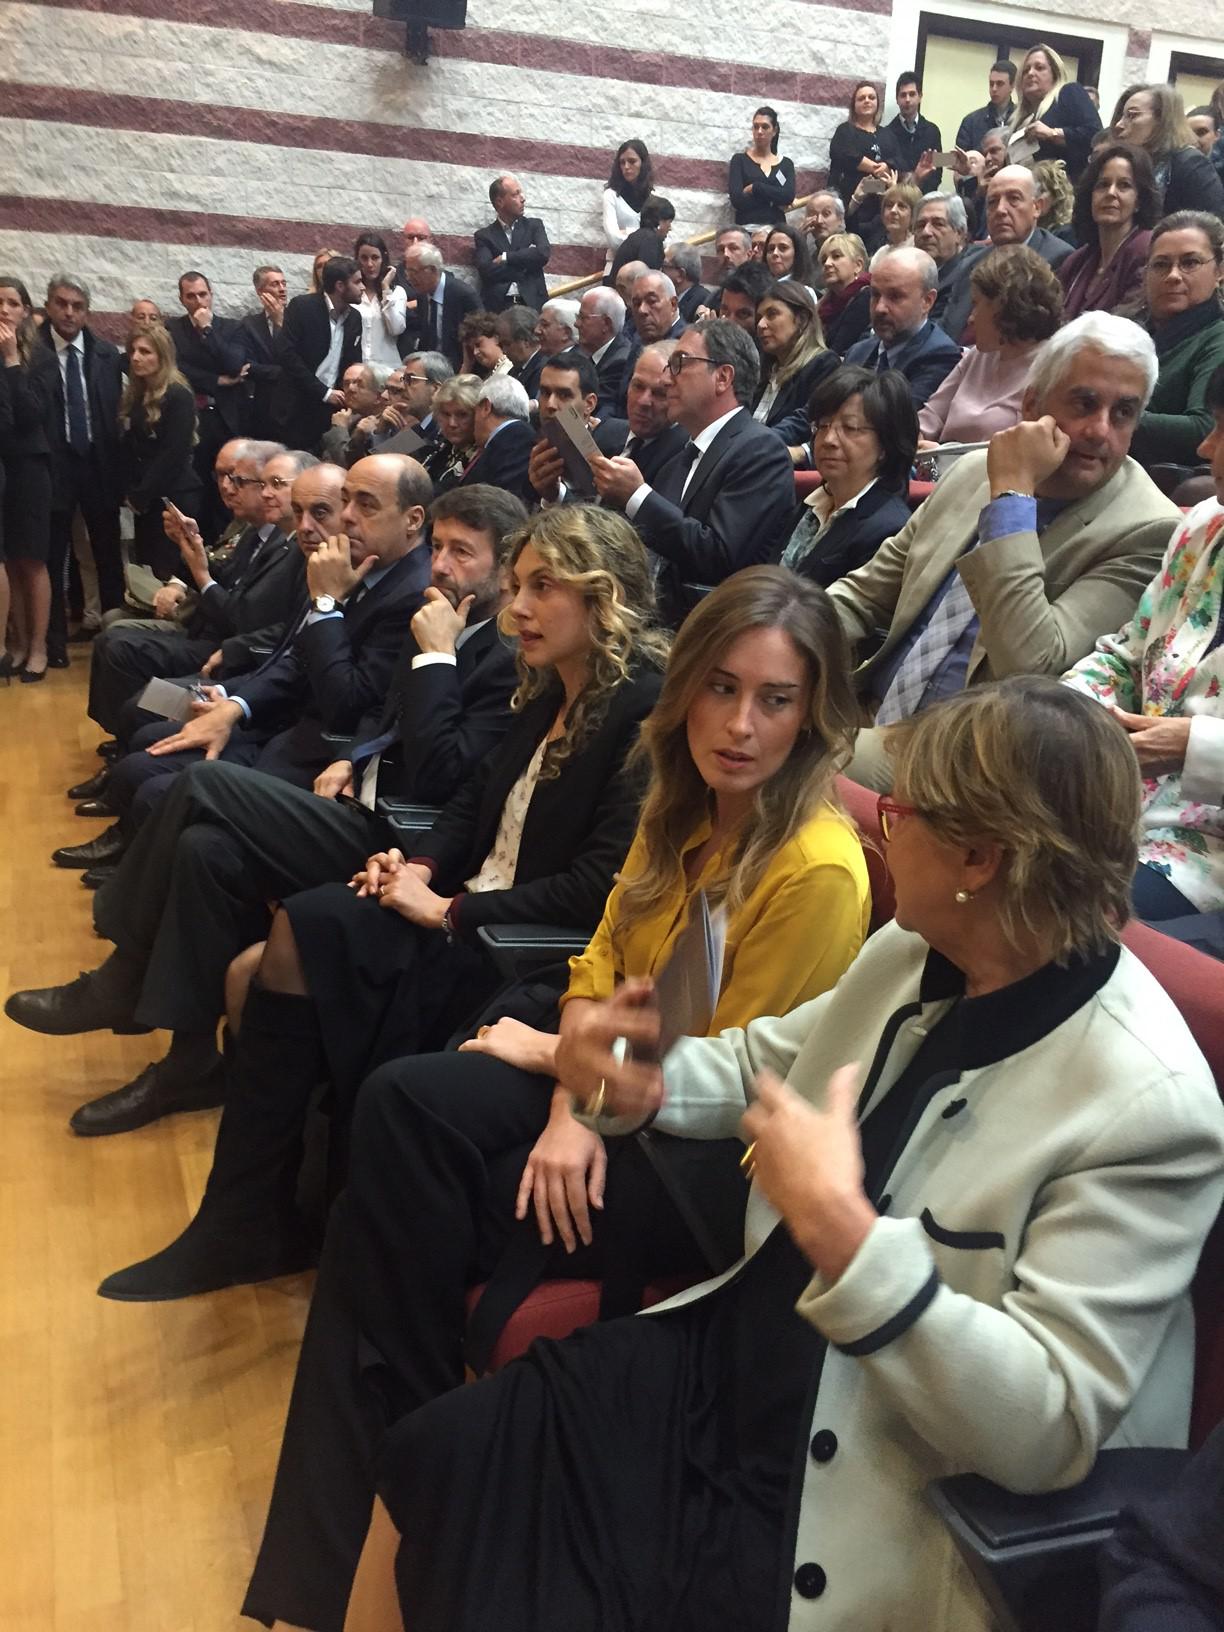 I ministri Boschi, Madia, Franceschini e il Governatore Zingaretti